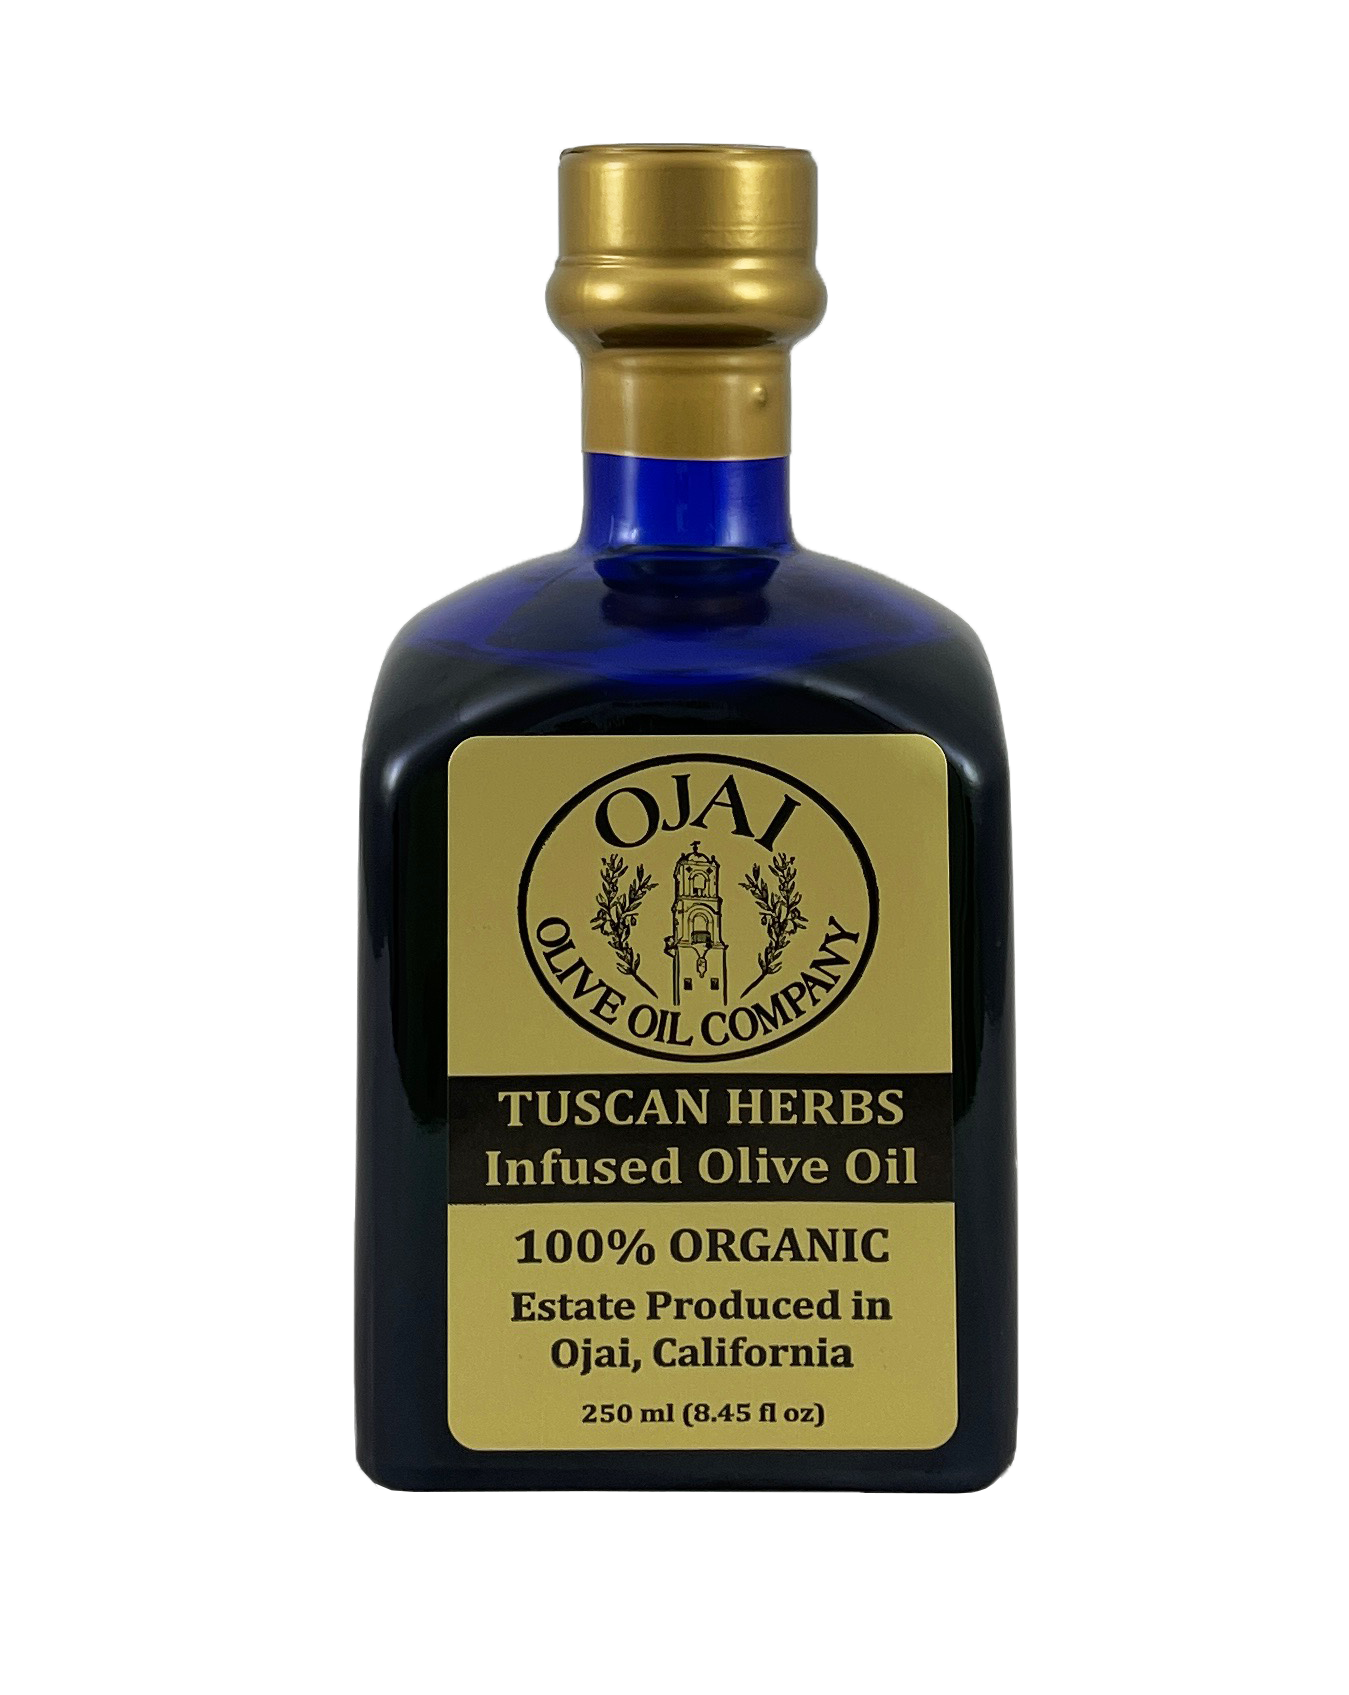 Ojai Olive Oil - Tuscan Herbs Infused Olive Oil 250ml